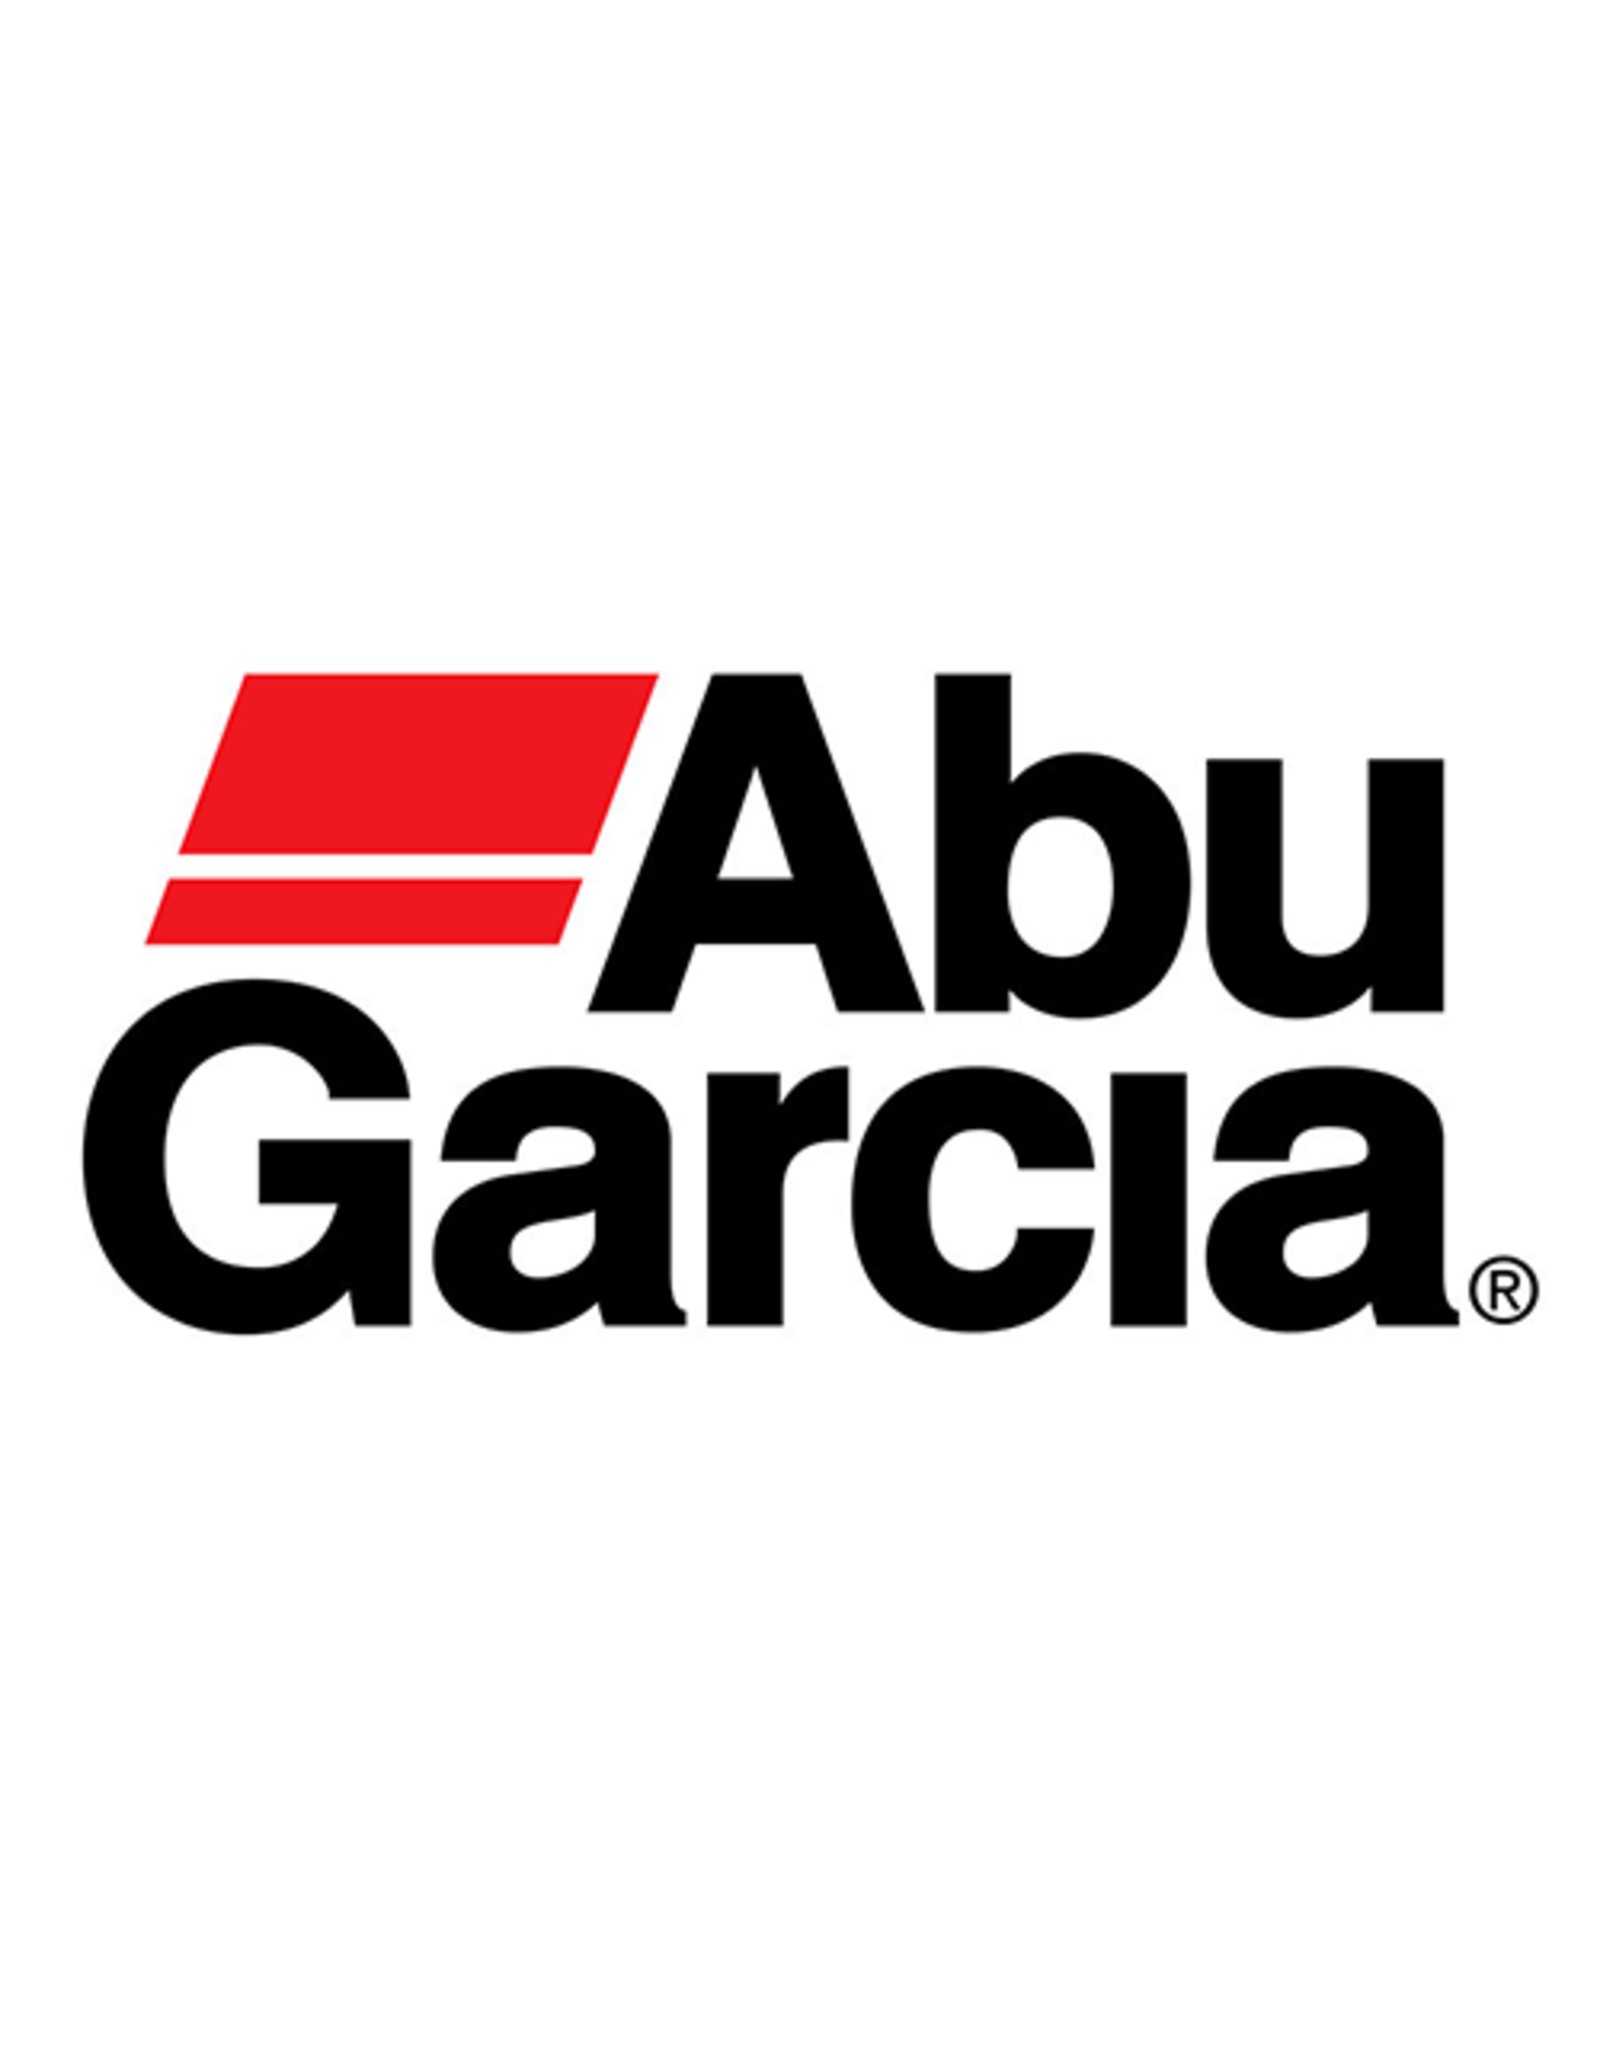 Abu Garcia 1344522  HANDLE